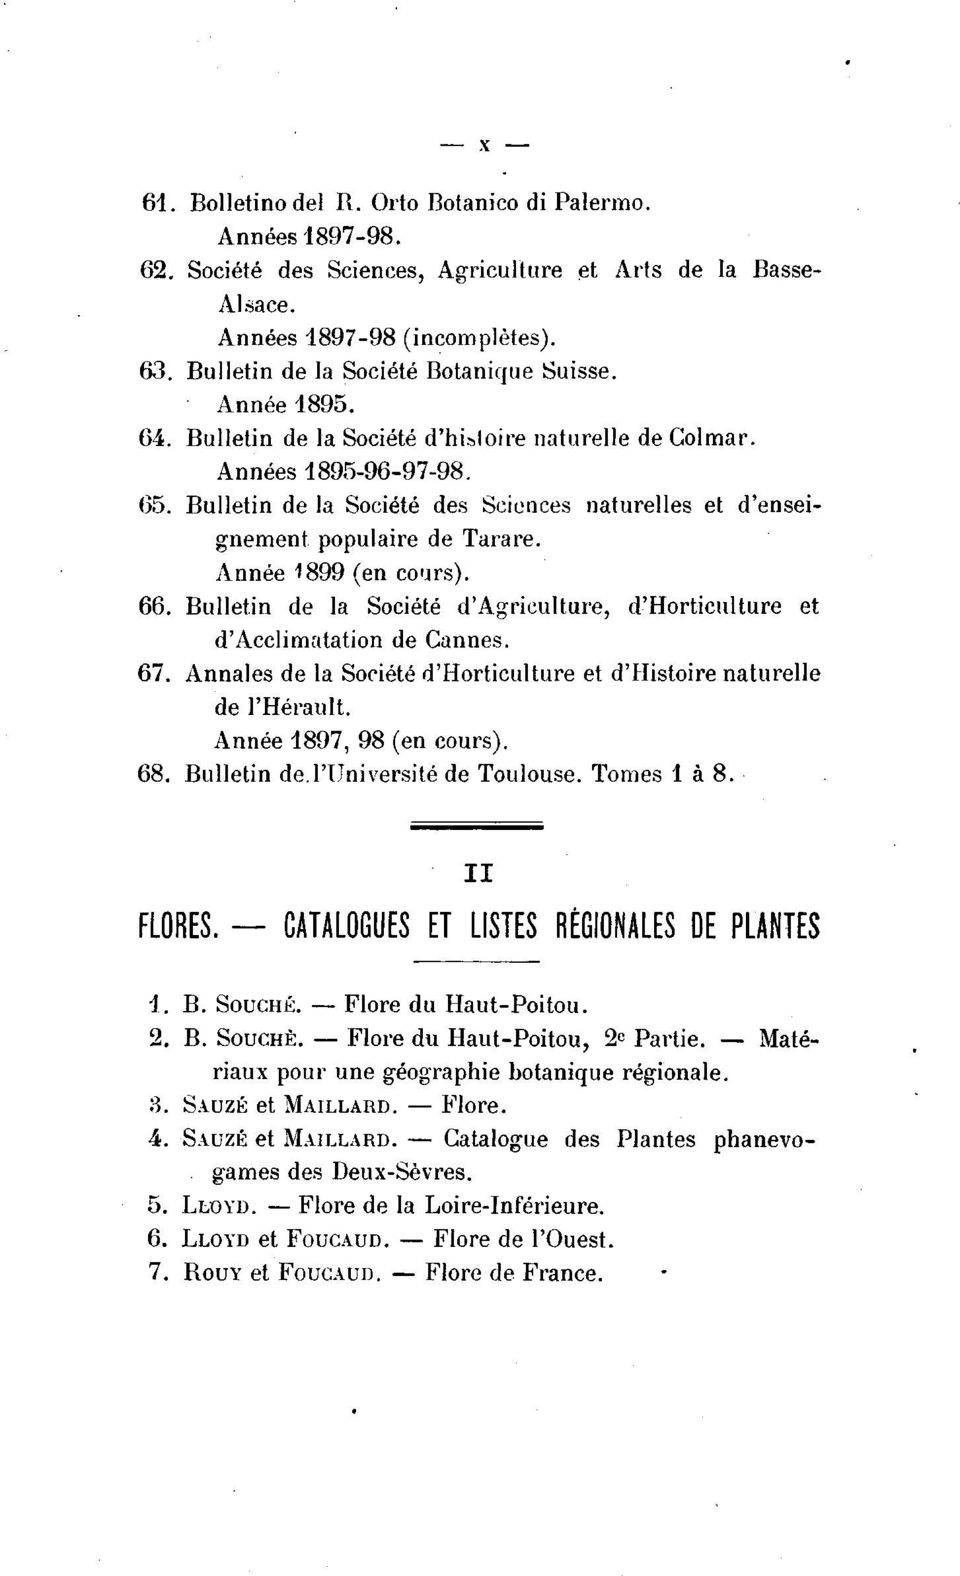 Bulletin de la Société des Sciences naturelles et d'enseignement populaire de Tarare. Année 1899 (en co us). 66. Bulletin de la Société d'agriculture, d'horticulture et d'acclimatation de Cannes. 67.